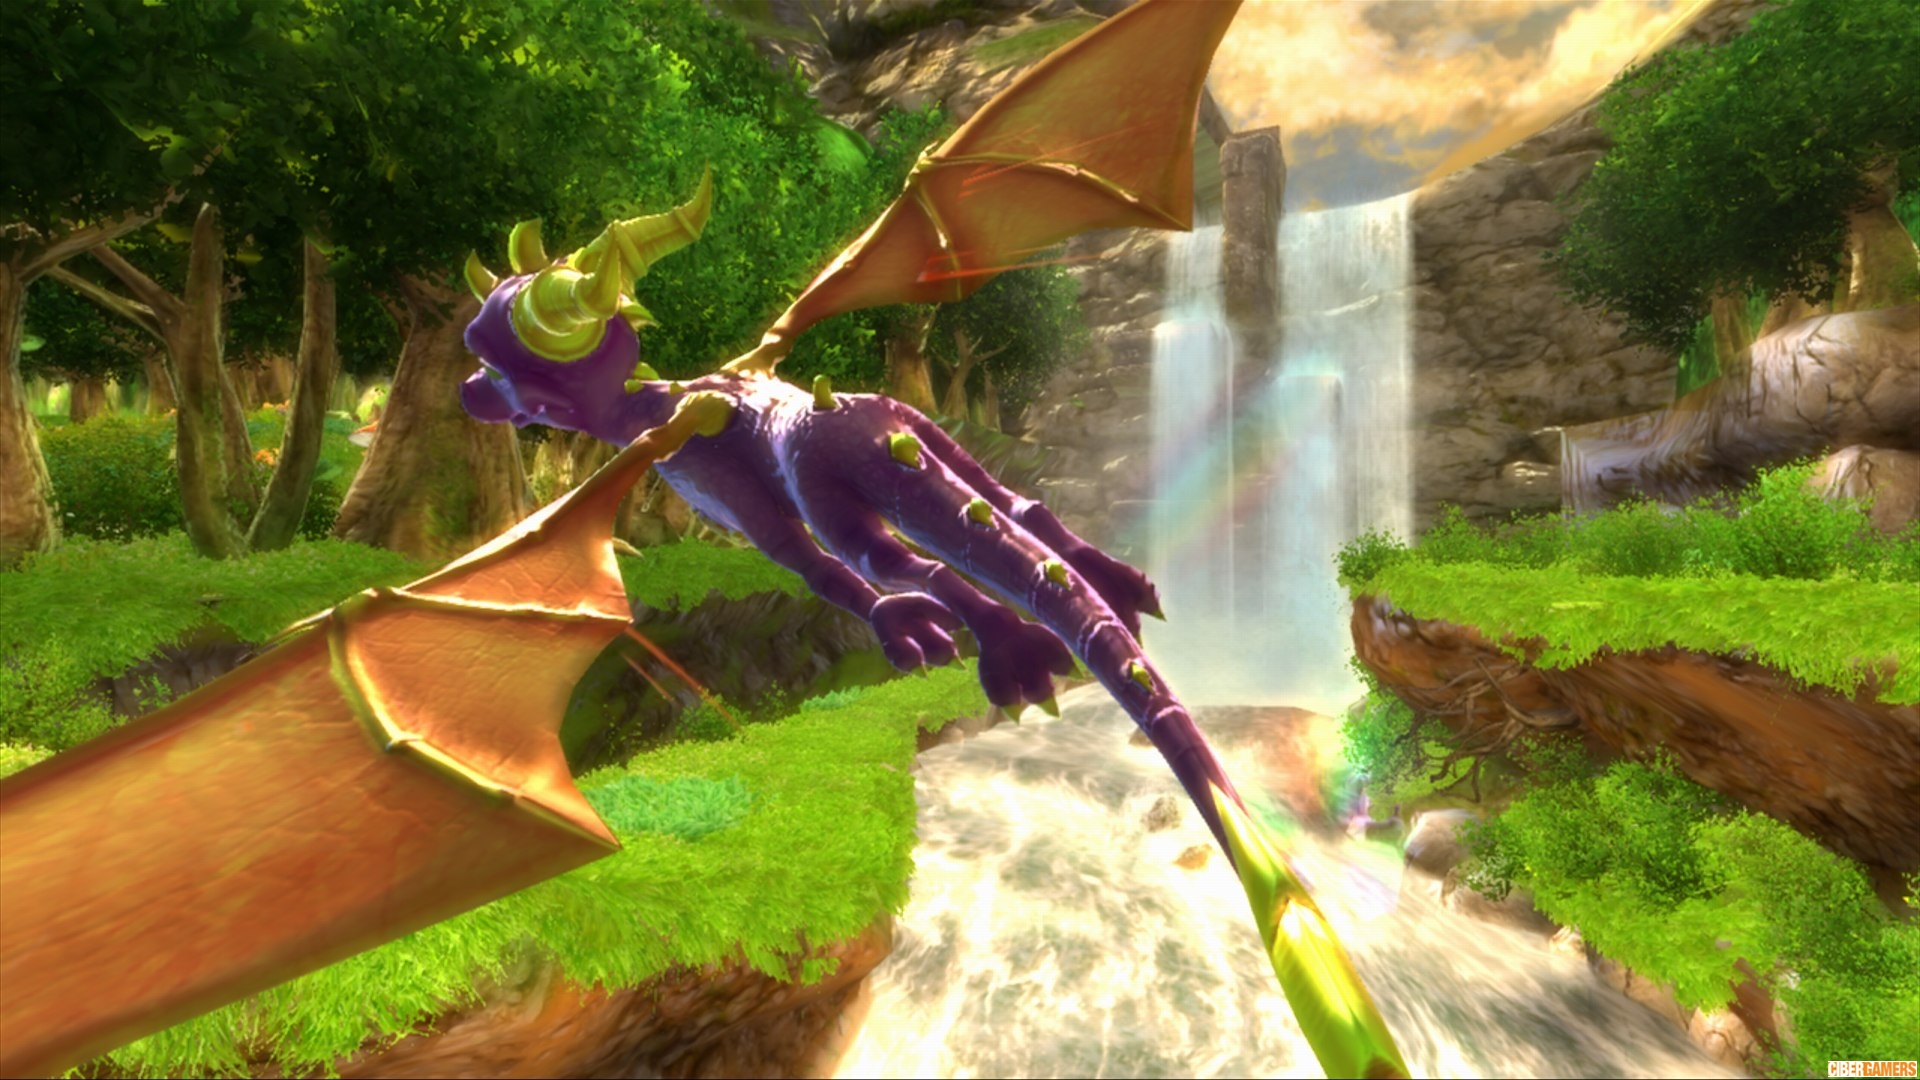 Descarga gratuita de fondo de pantalla para móvil de Dragón, Videojuego, Spyro (Personaje), The Legend Of Spyro: Dawn Of The Dragon.